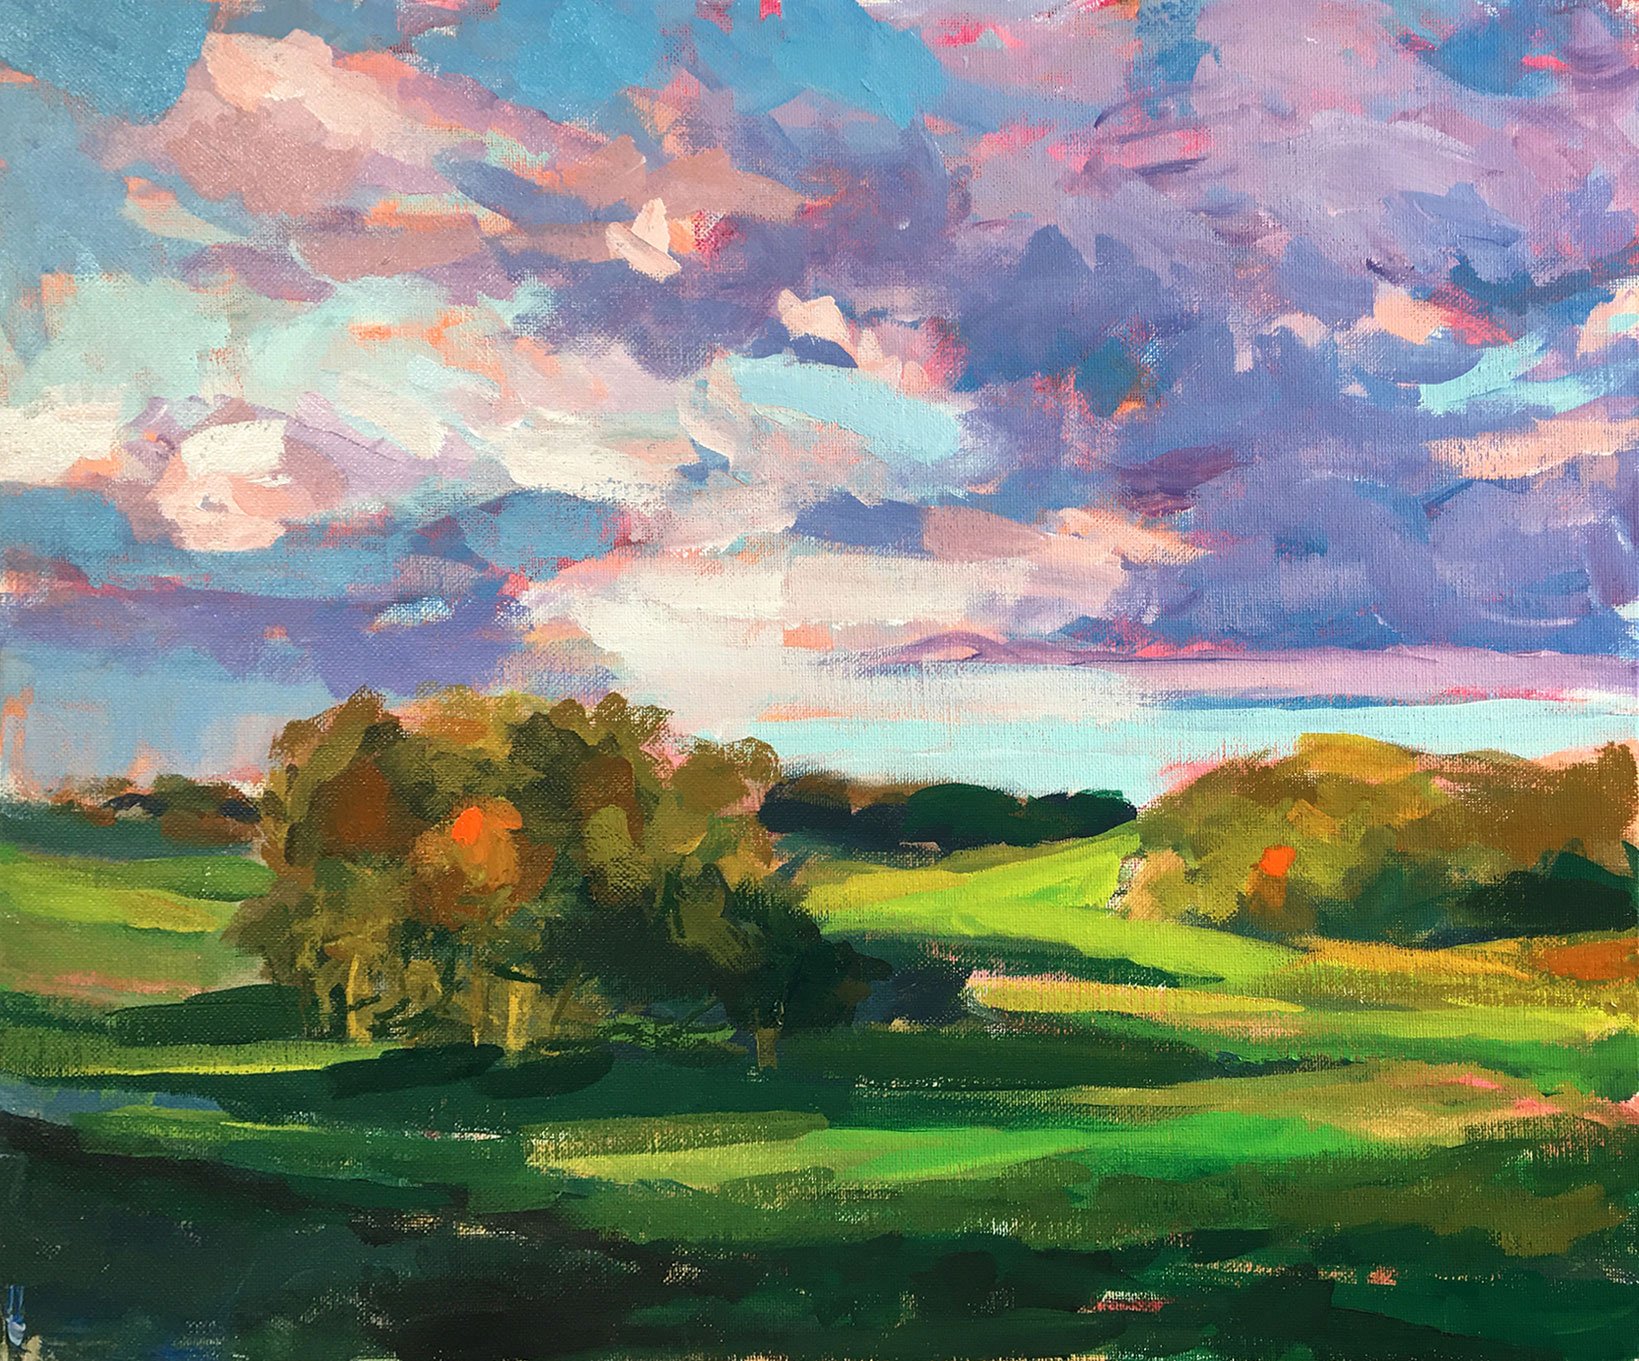 M. Graham Watercolor Paints Landscape Trial Set in Nature Colors